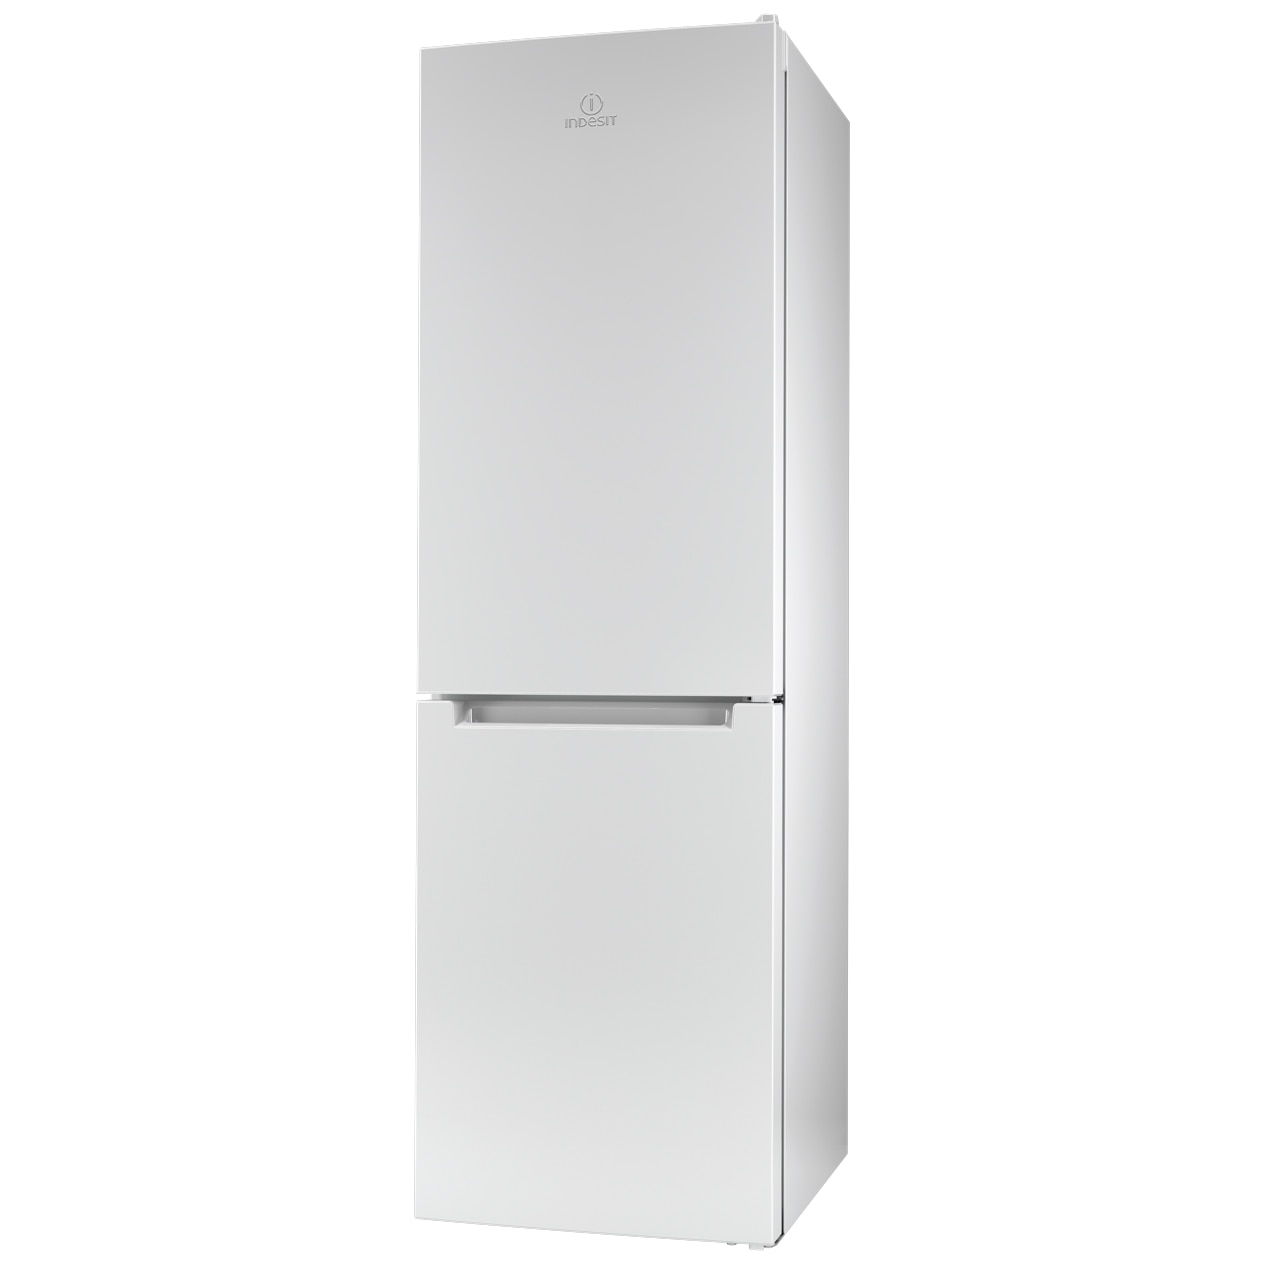 Хладилник Indesit LI80 FF1 W с обем от 301 л.